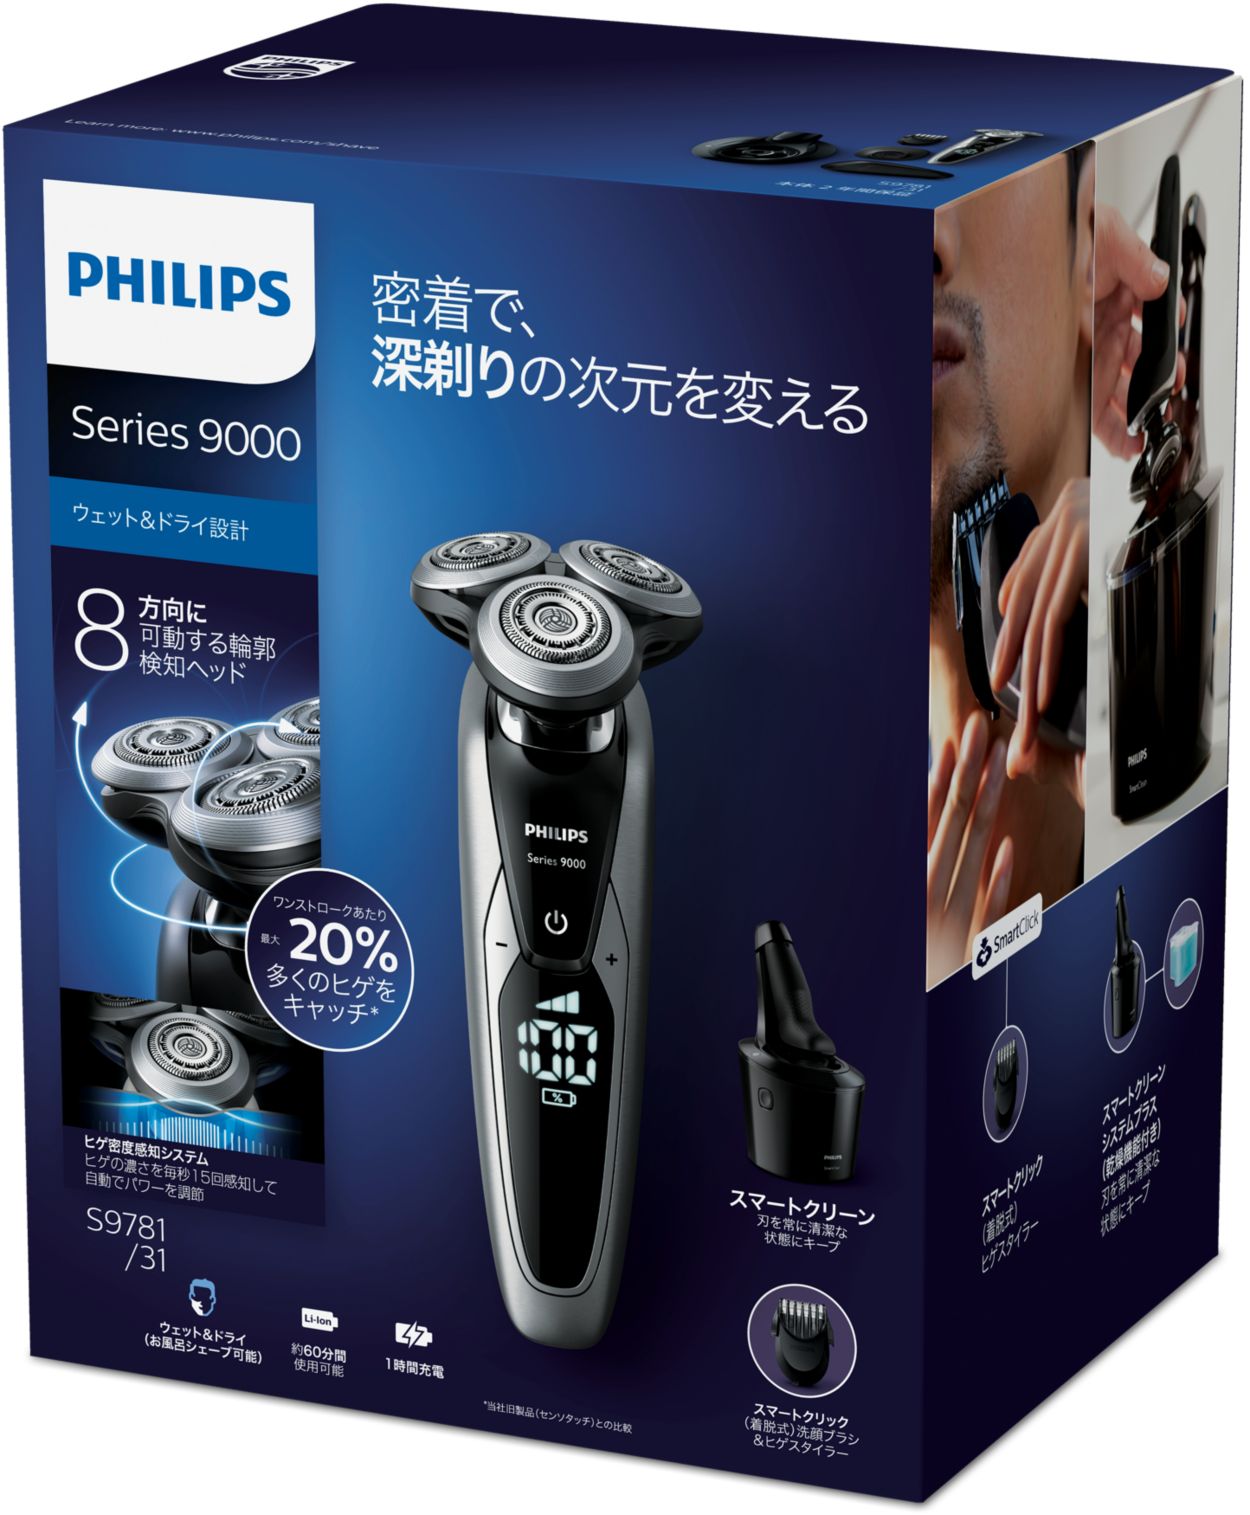 【新品未使用】フィリップス 9000  電動シェーバー  S9696/31